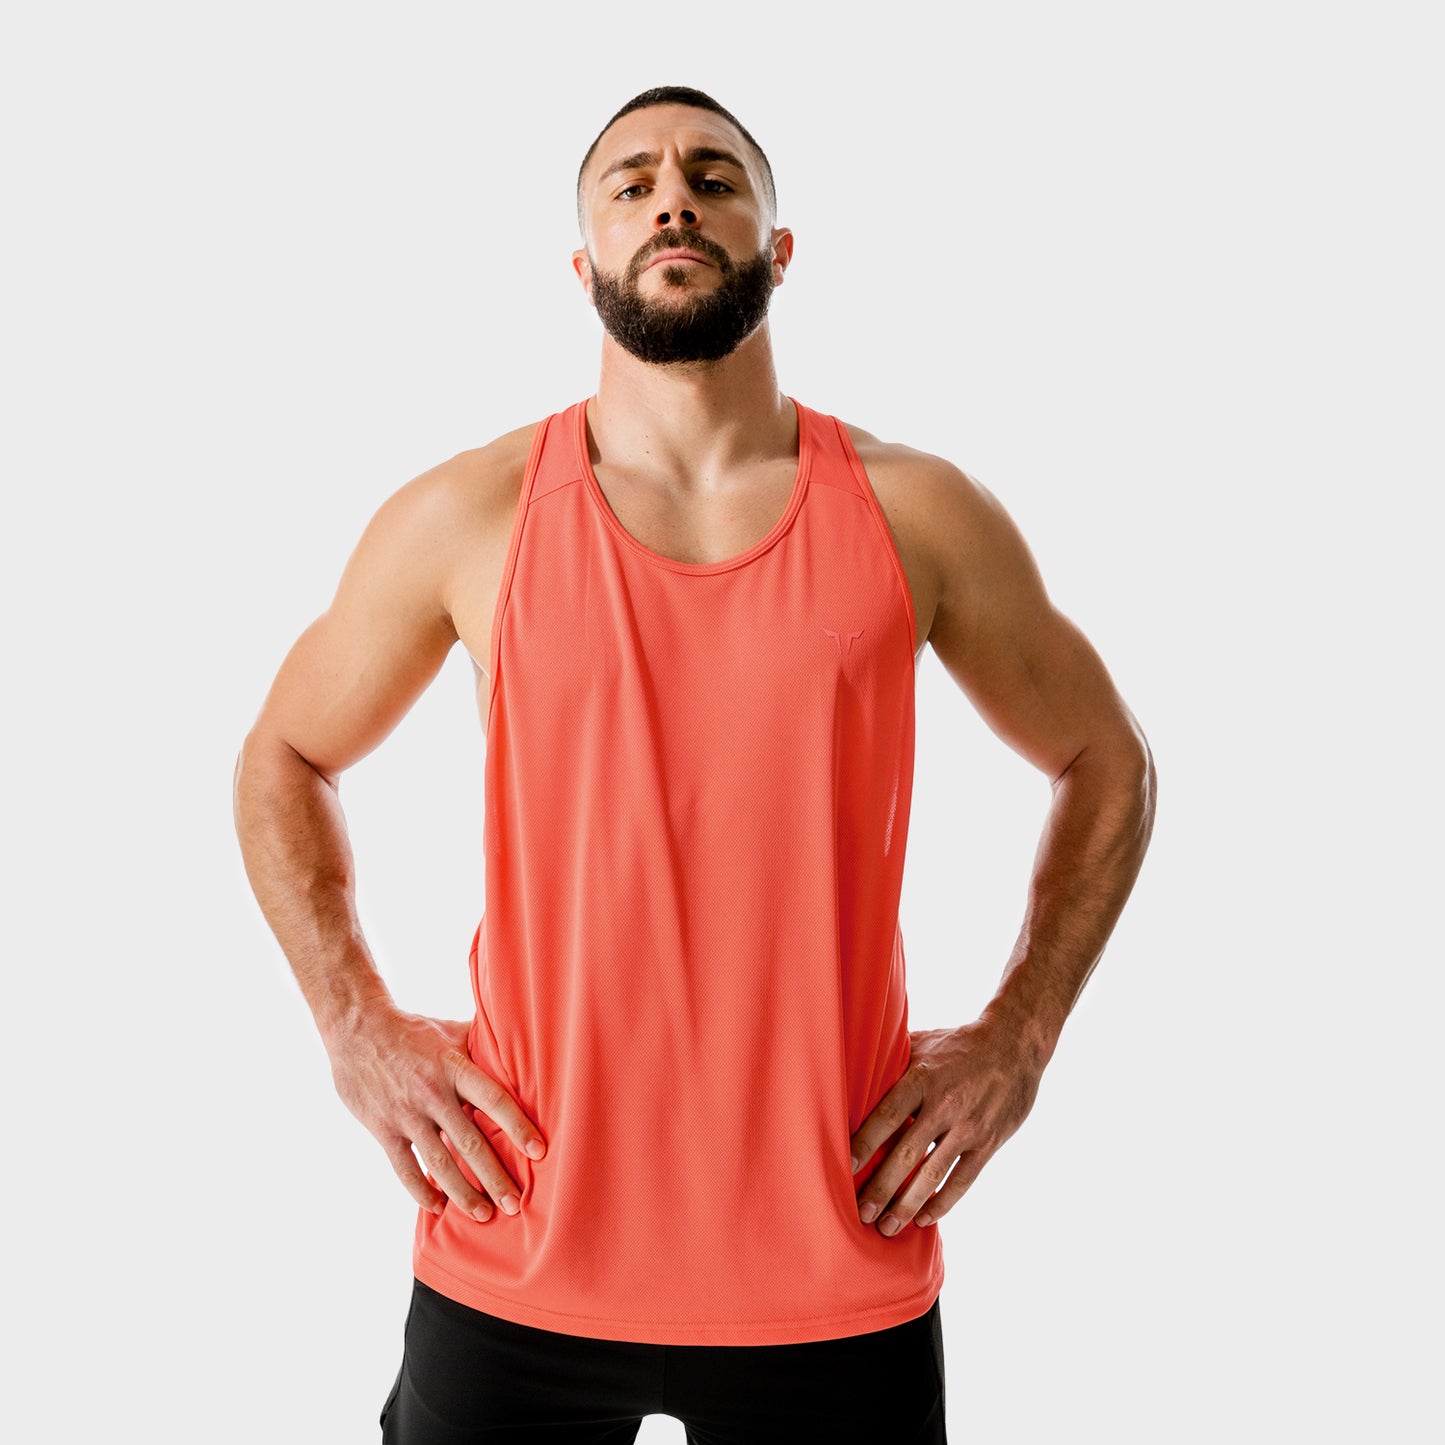 squatwolf-gym-wear-lab-360-weightless-stringer-red-stringer-vests-for-men